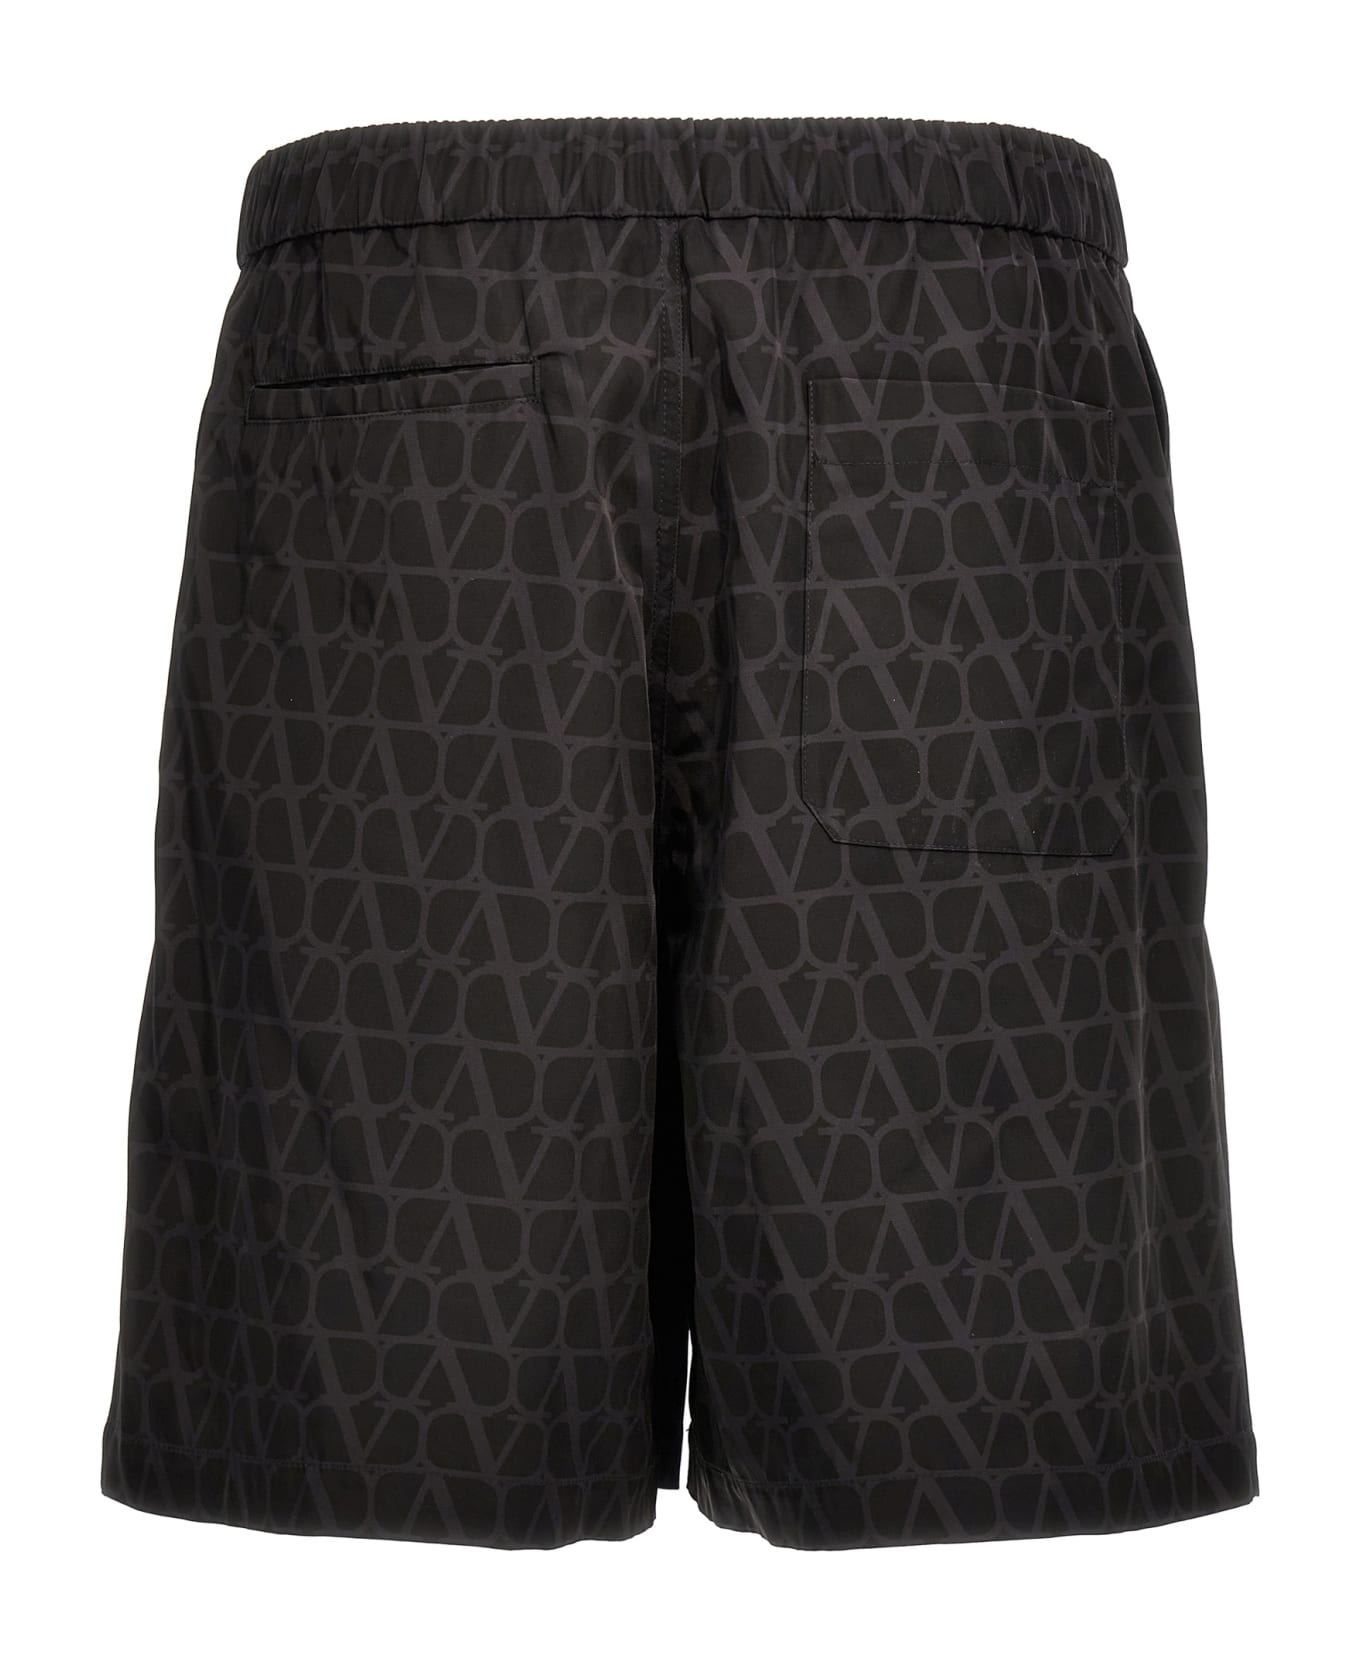 Valentino Garavani 'toile Iconographe' Valentino Bermuda Shorts - Black ショートパンツ